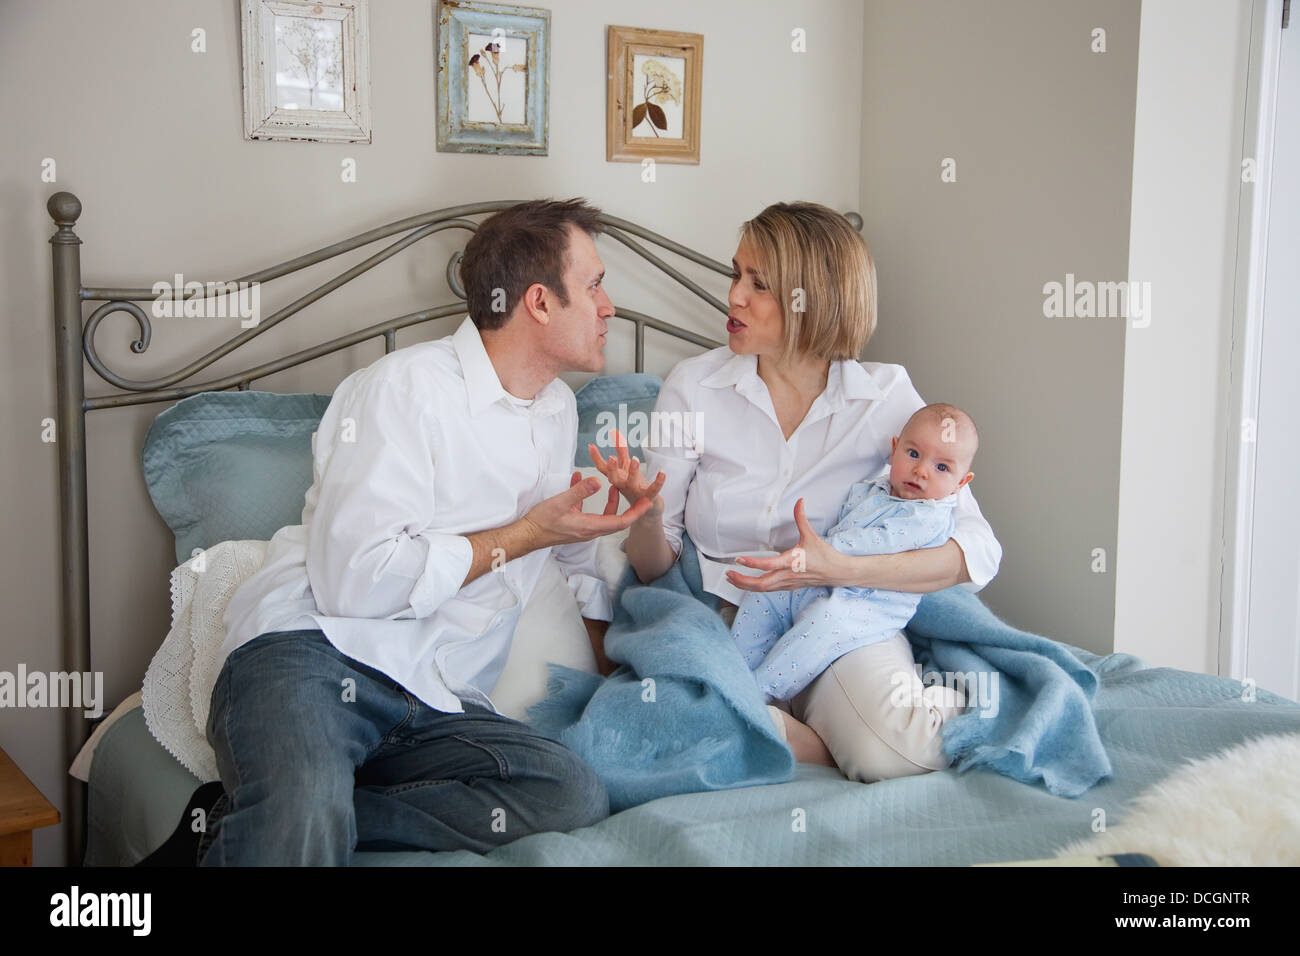 Parents Argue While Holding A Baby; Jordan, Ontario, Canada Stock Photo